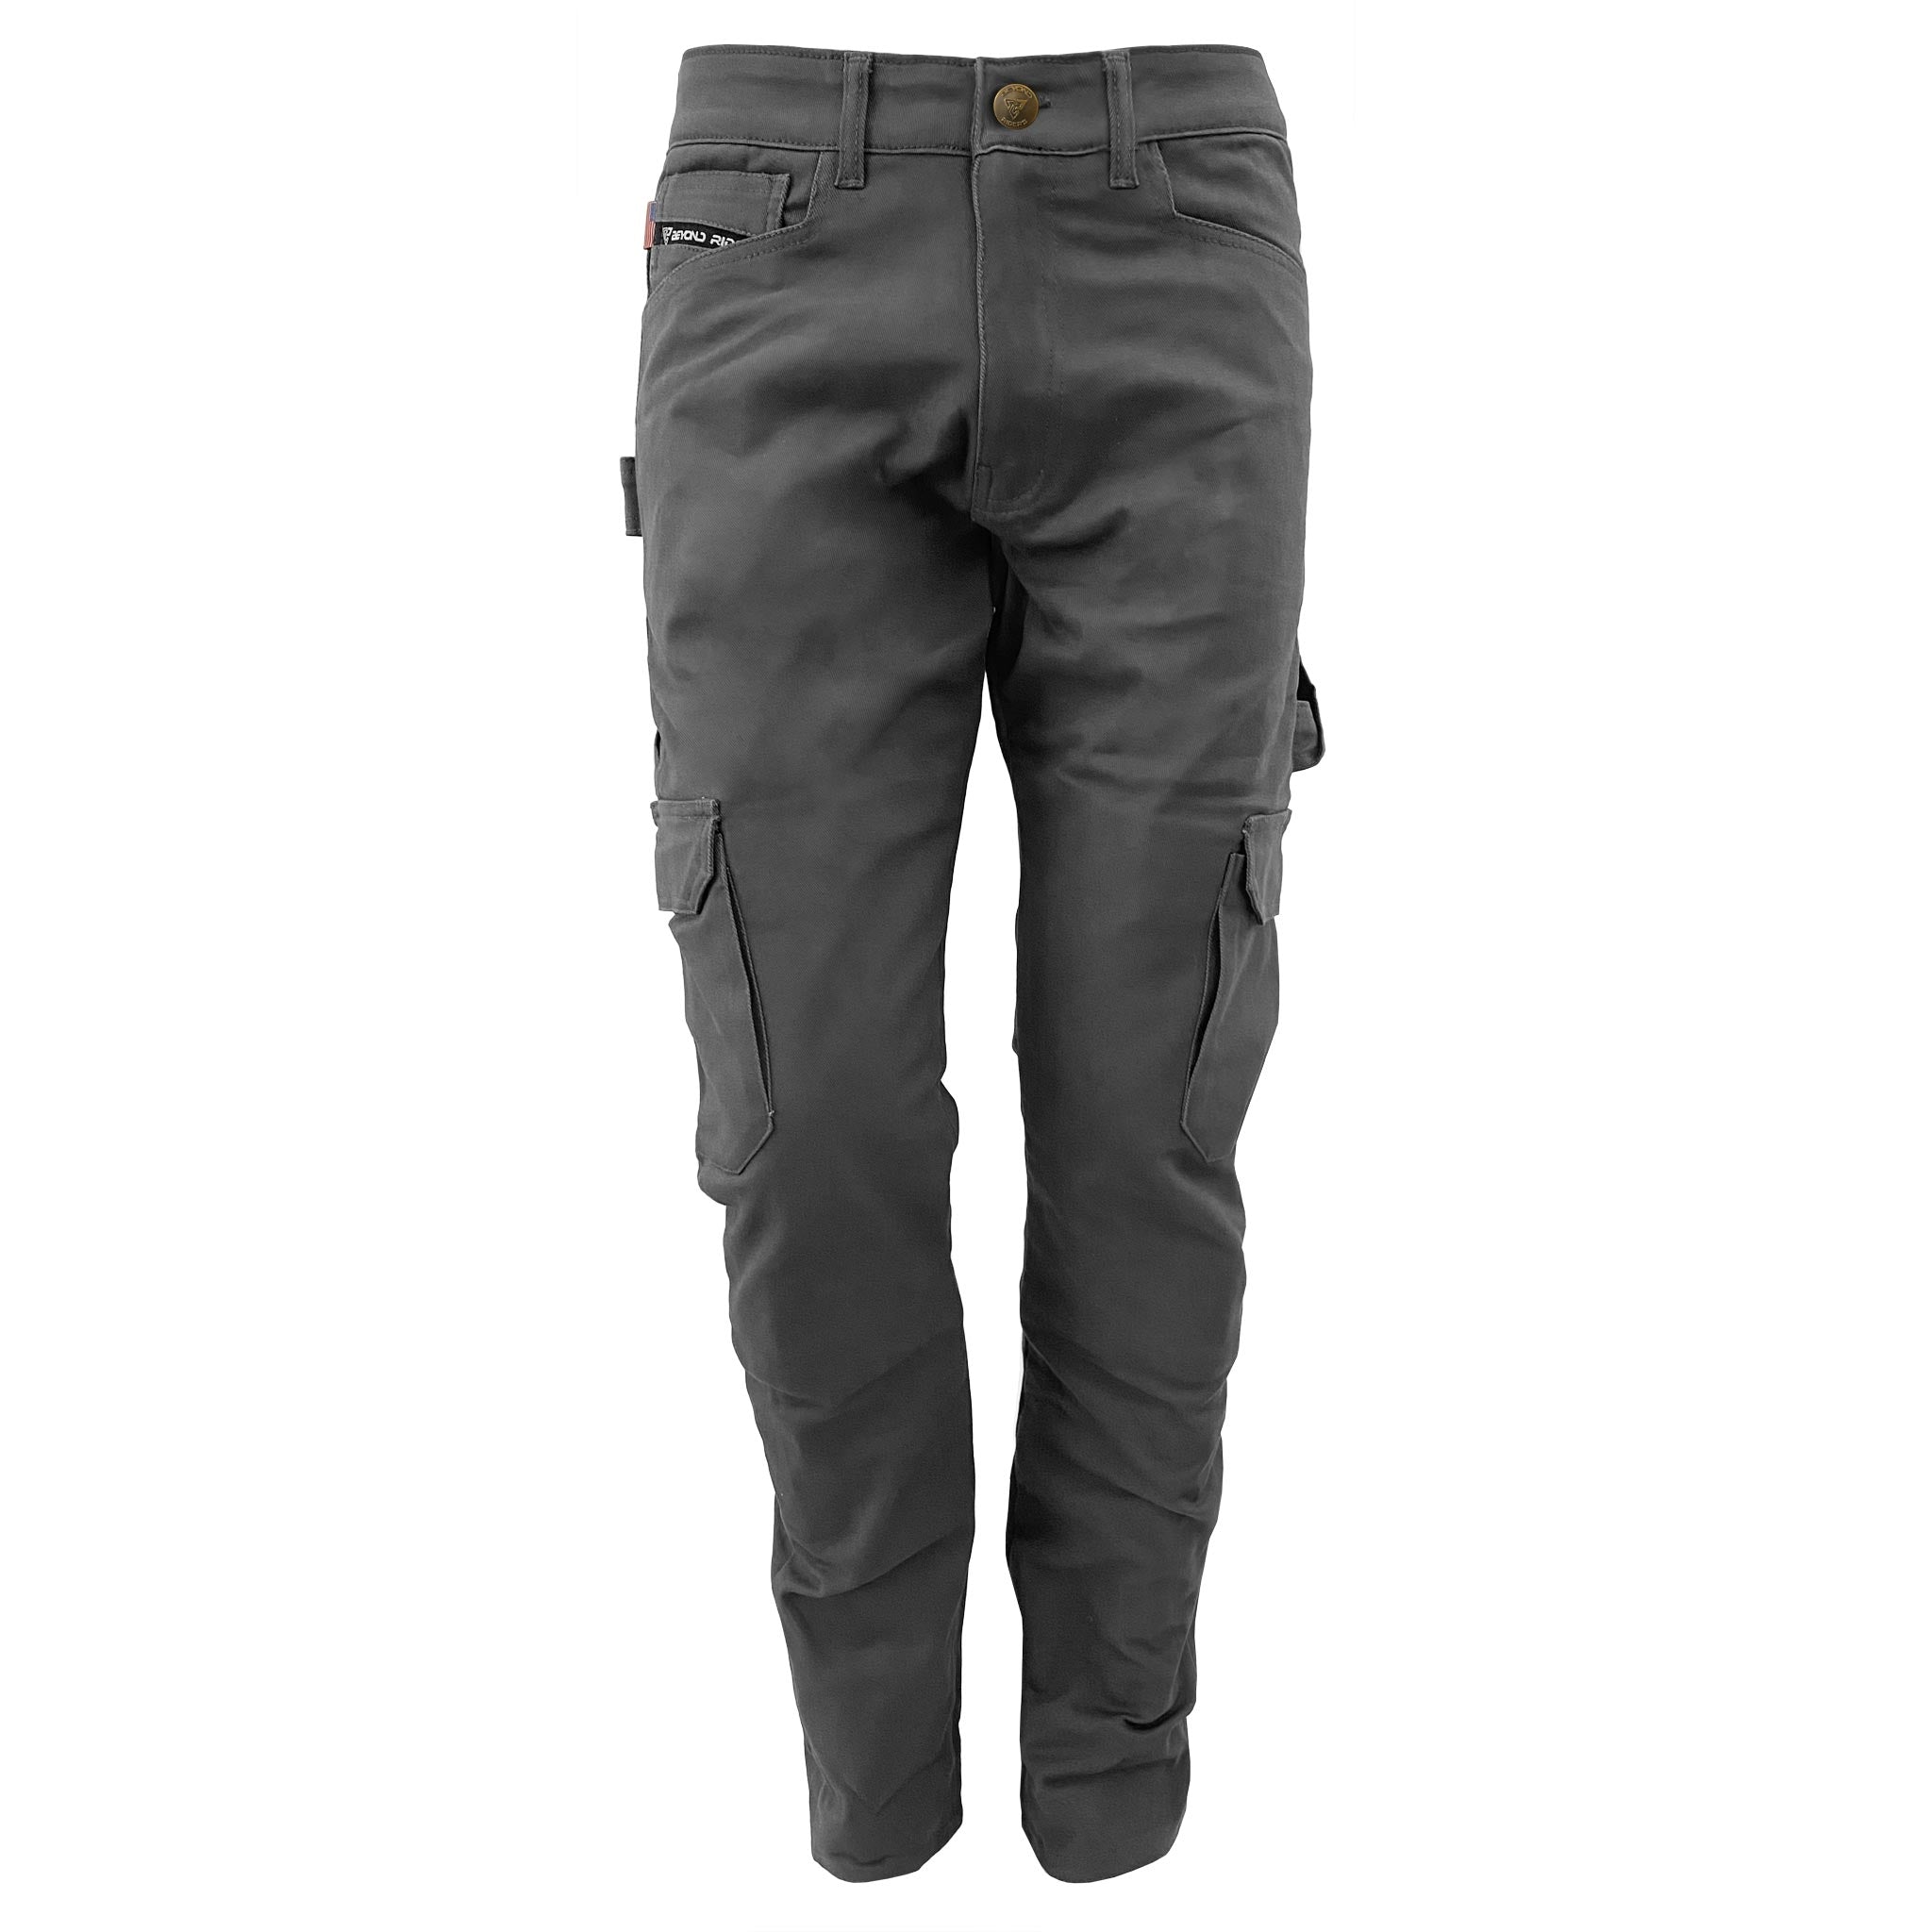 men's-cargo-pants-gray-color-front